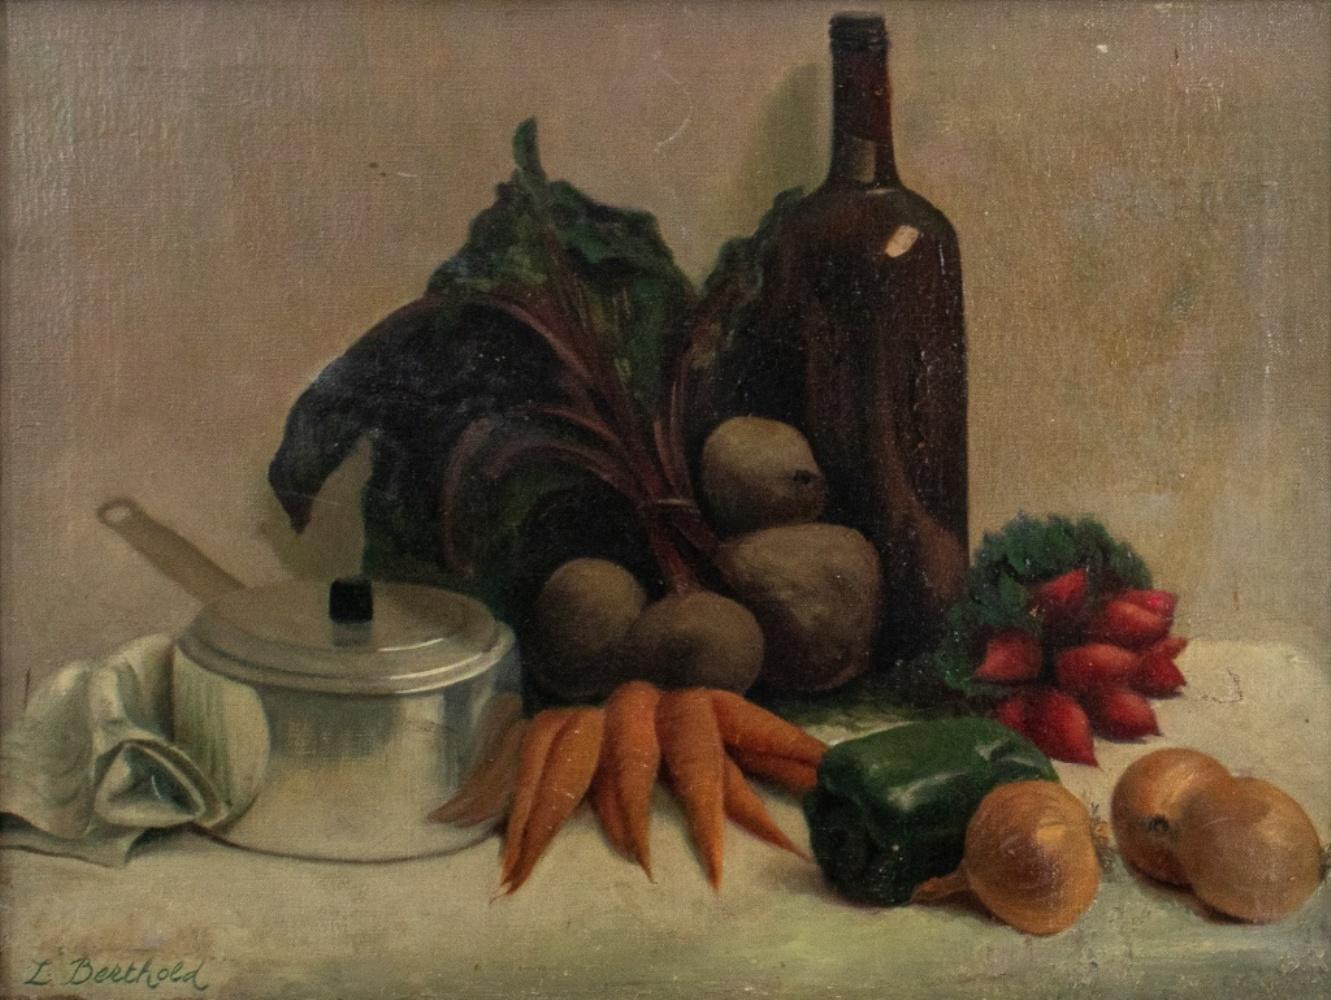 Nature morte réaliste à l'huile sur toile représentant des oignons, des betteraves, des oignons, des carottes, une marmite, une bouteille de vin rouge et un poivron vert, signée 